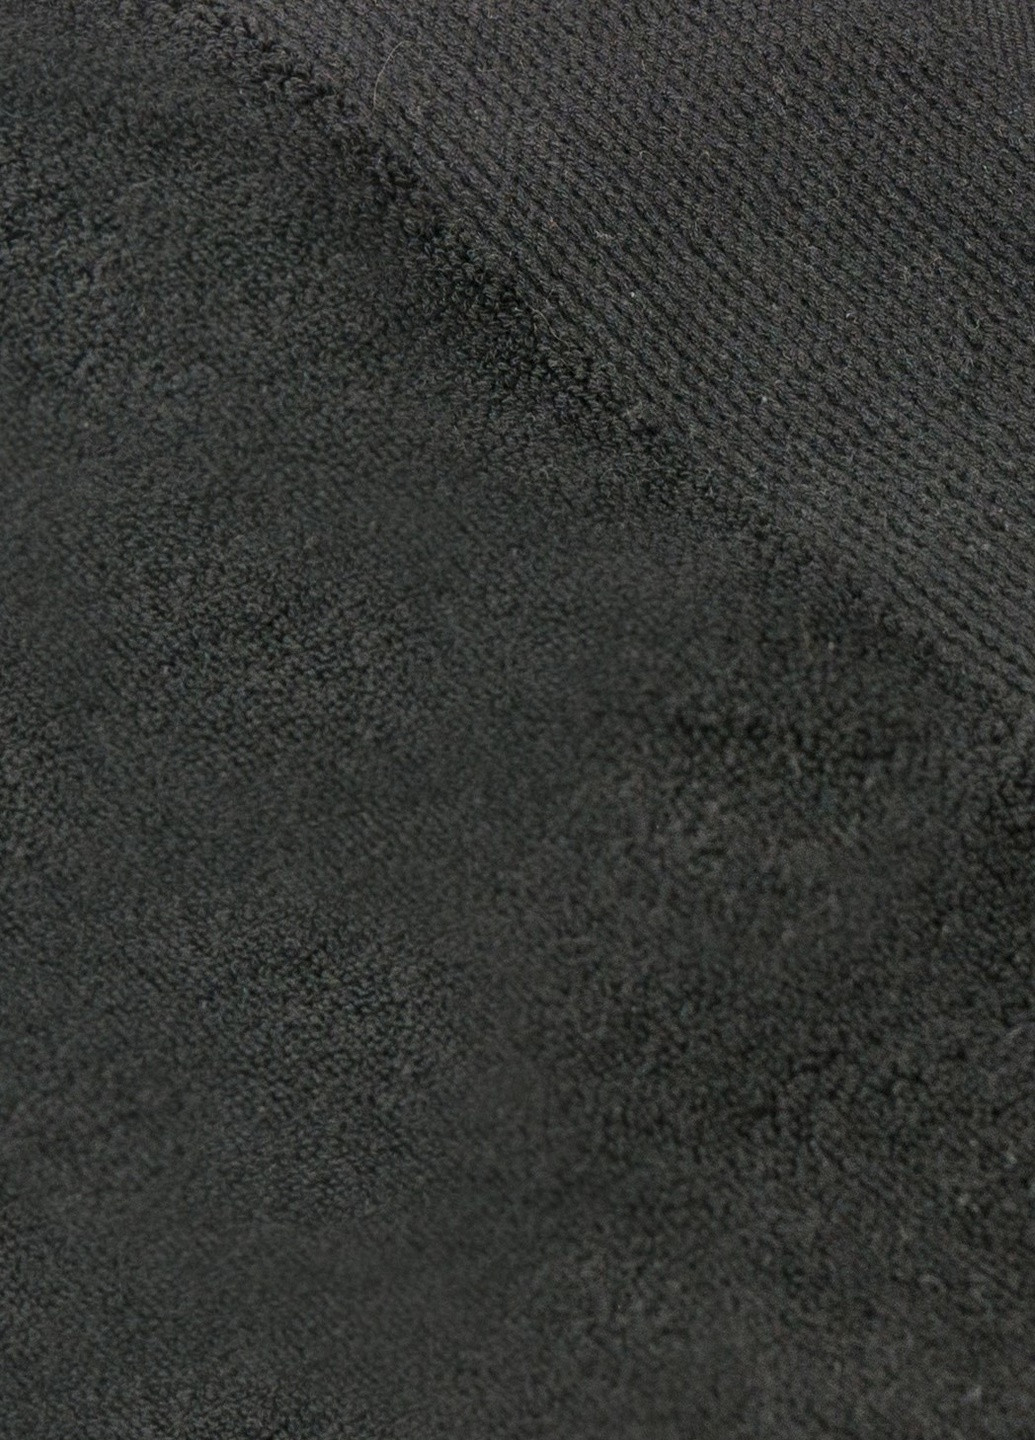 TURComFor турецкое полотенце tc303374811 однотонный черный производство - Турция